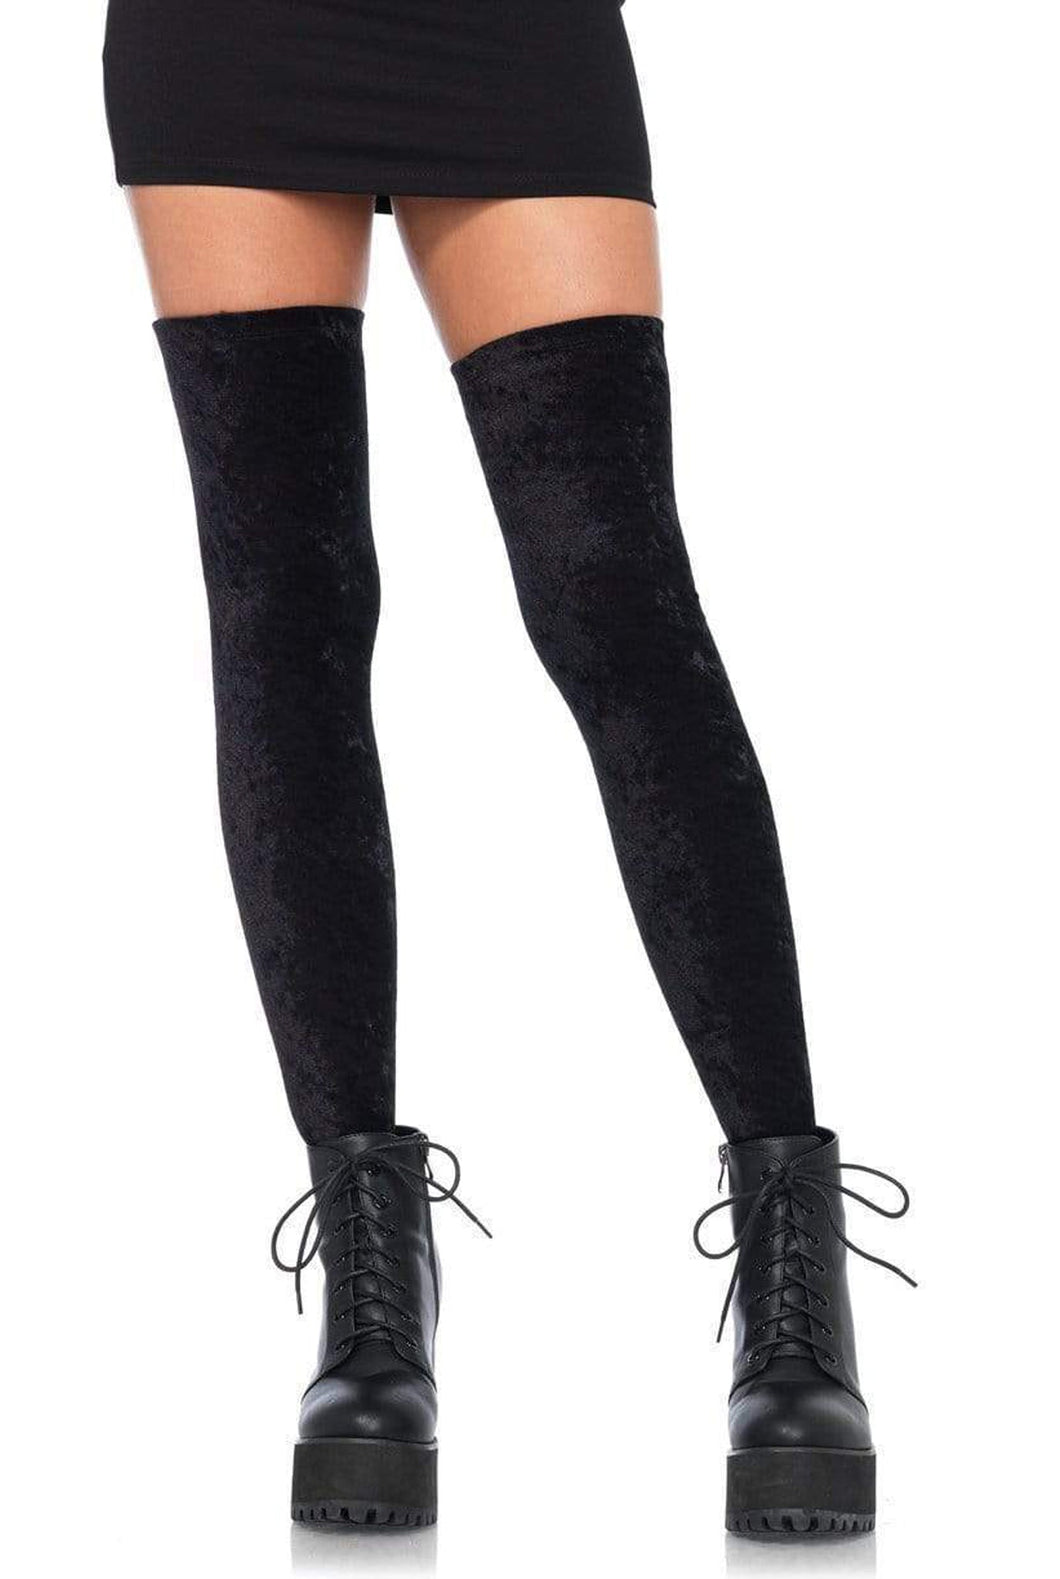 Velvet Thigh High Stockings